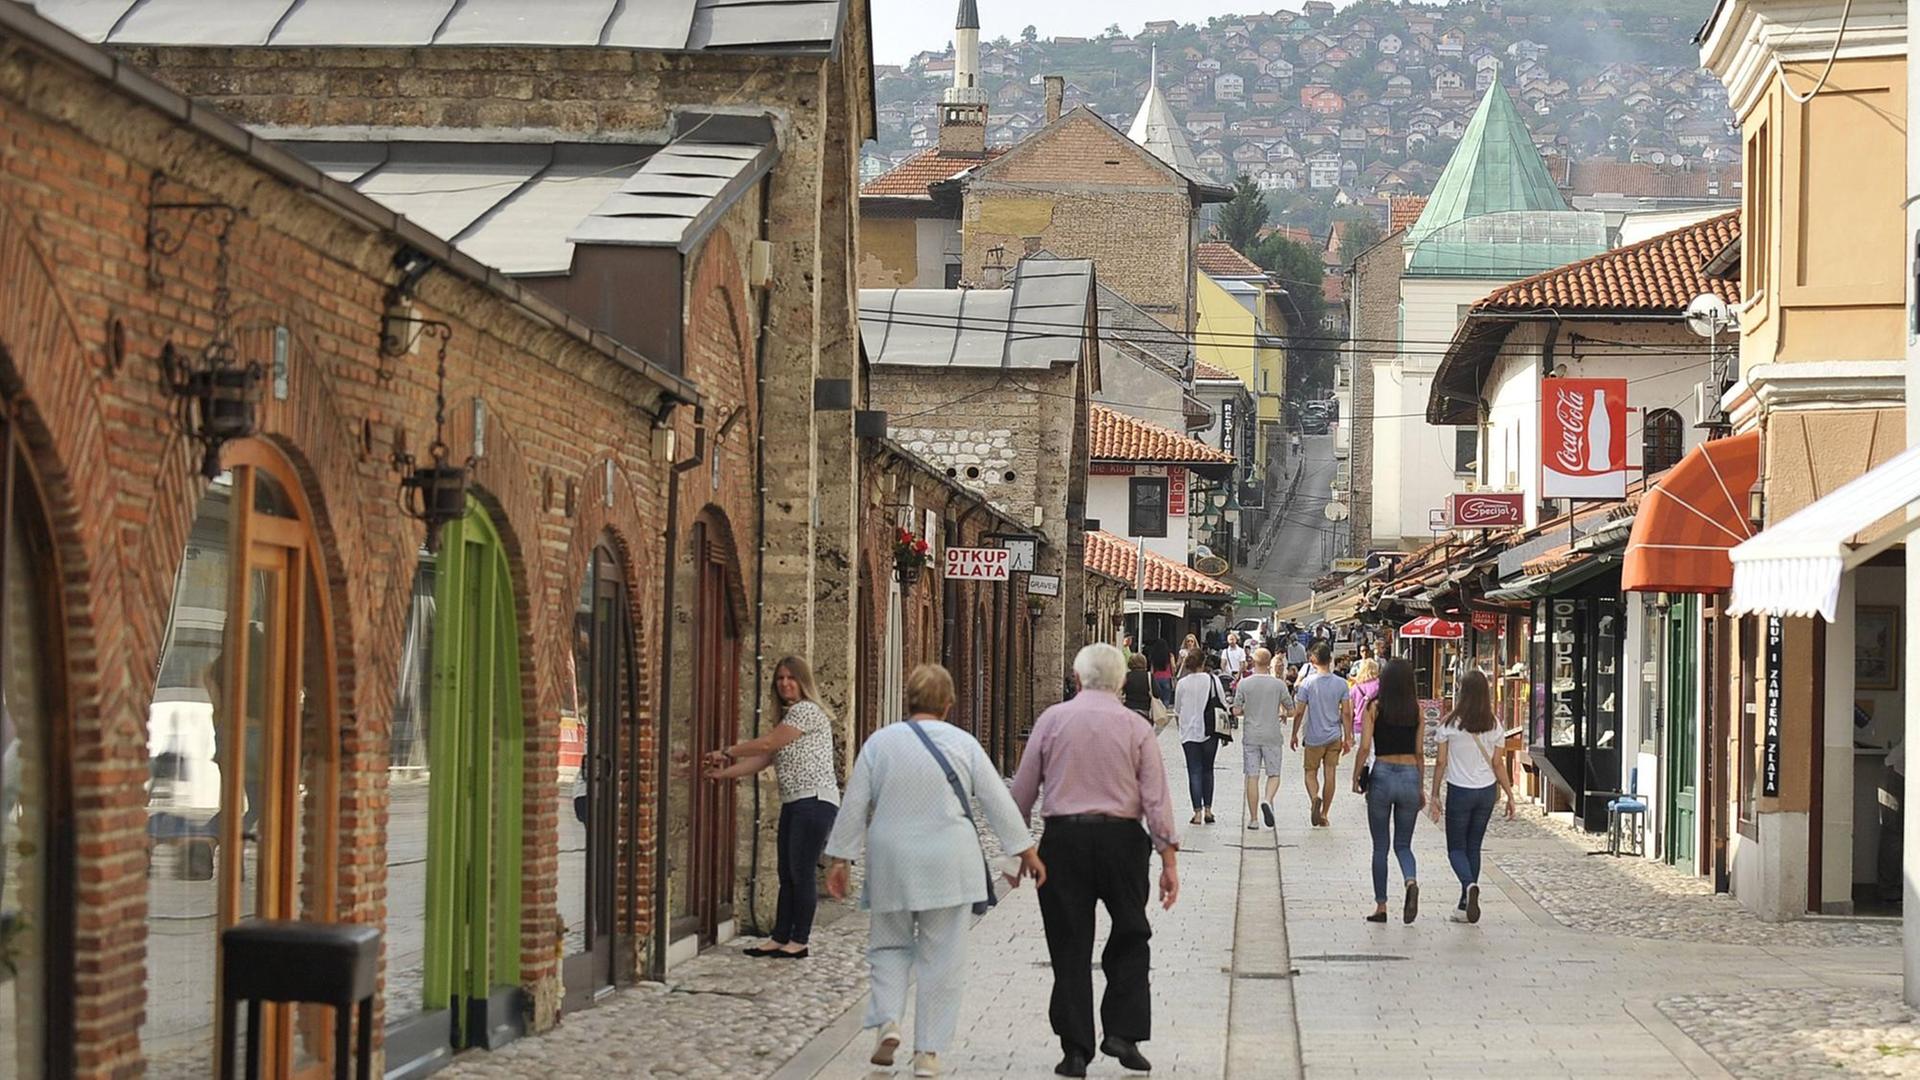 Eine Fußgänger-Straße in der Altstadt Sarajevos mit Blick auf die bewohnten Hügel im Hintergrund. Links ein altes Backsteingebäude mit Torbögen. Aufgenommen am 22.06.2016